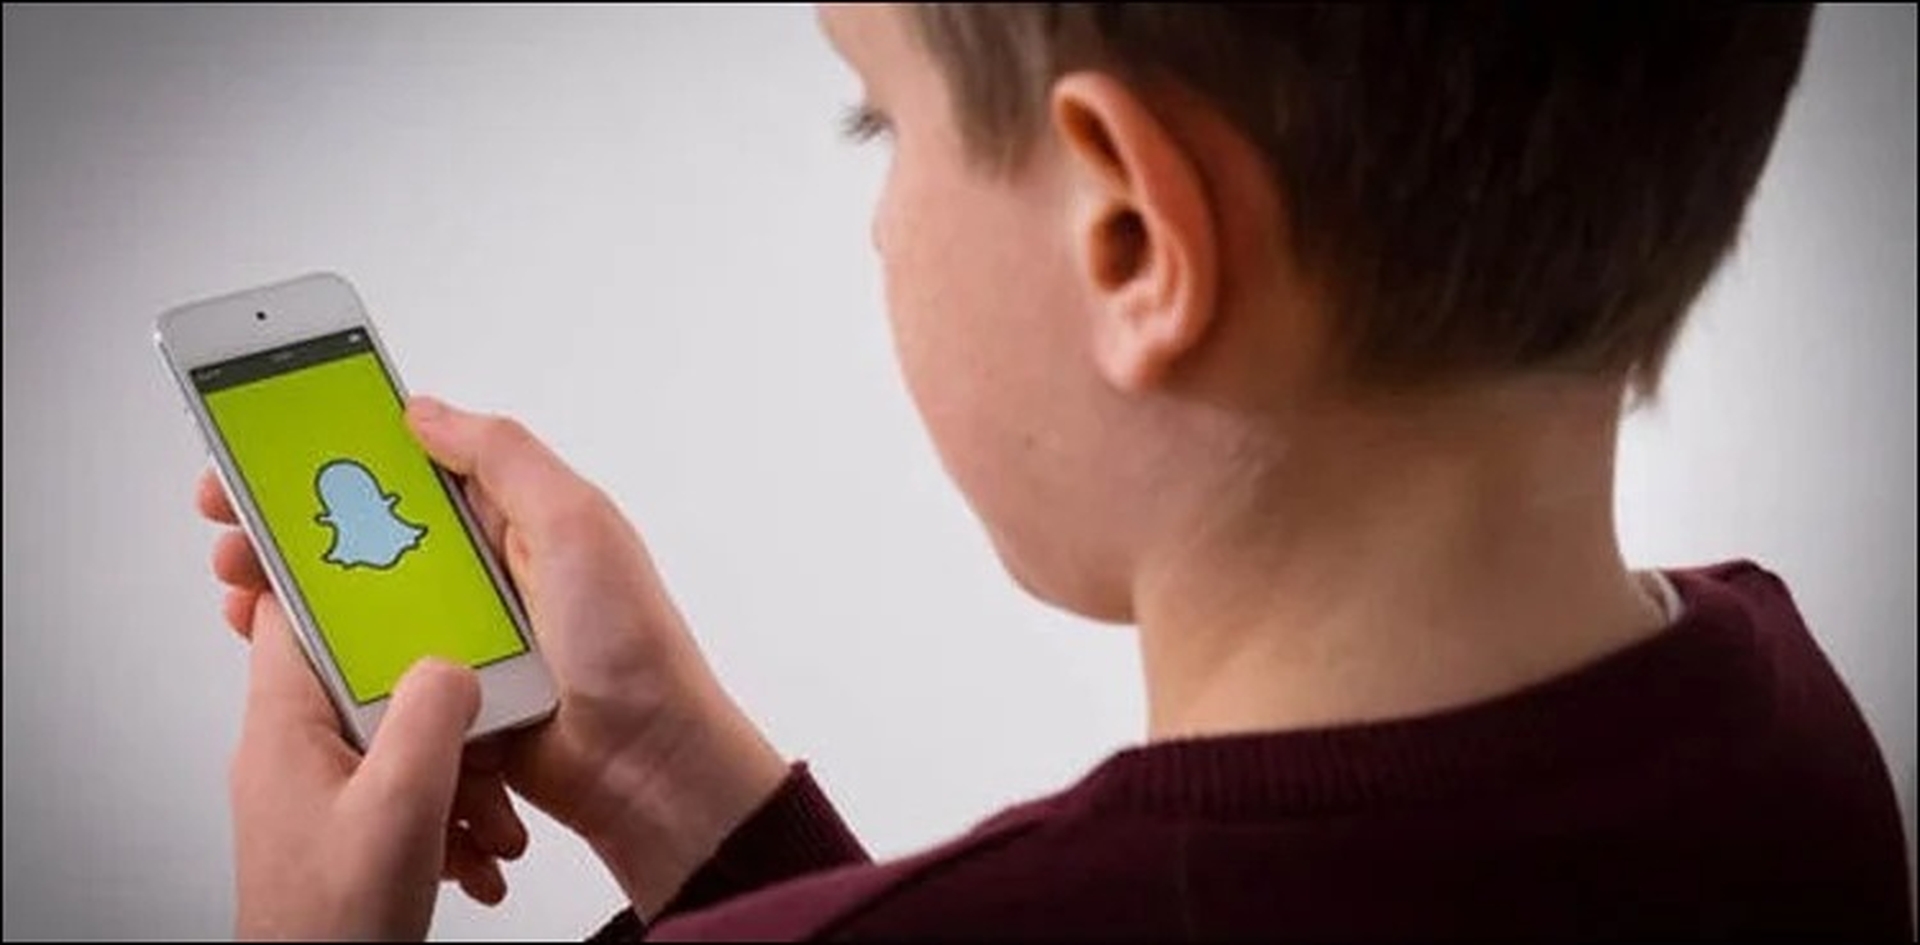 Le contrôle parental appelé Snapchat Family Center semble être sur le point de sortir, avec de nouvelles captures d'écran basées sur le code backend montrant comment il fonctionnera dans l'application.